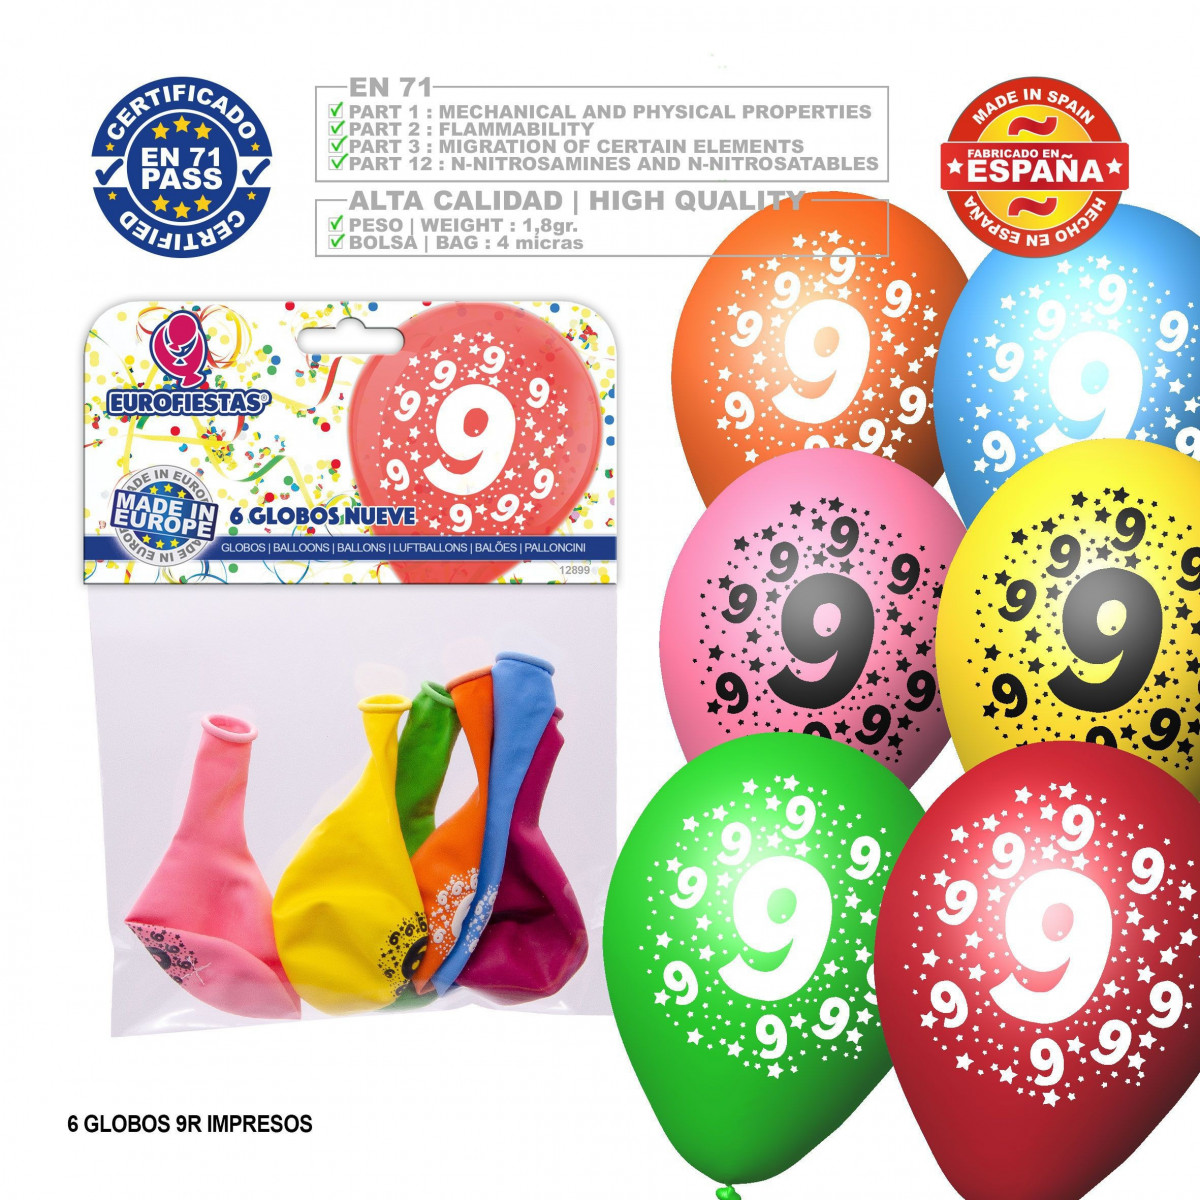 Ballon couleurs assorties 9r numéro 9 imprimé 6 unités